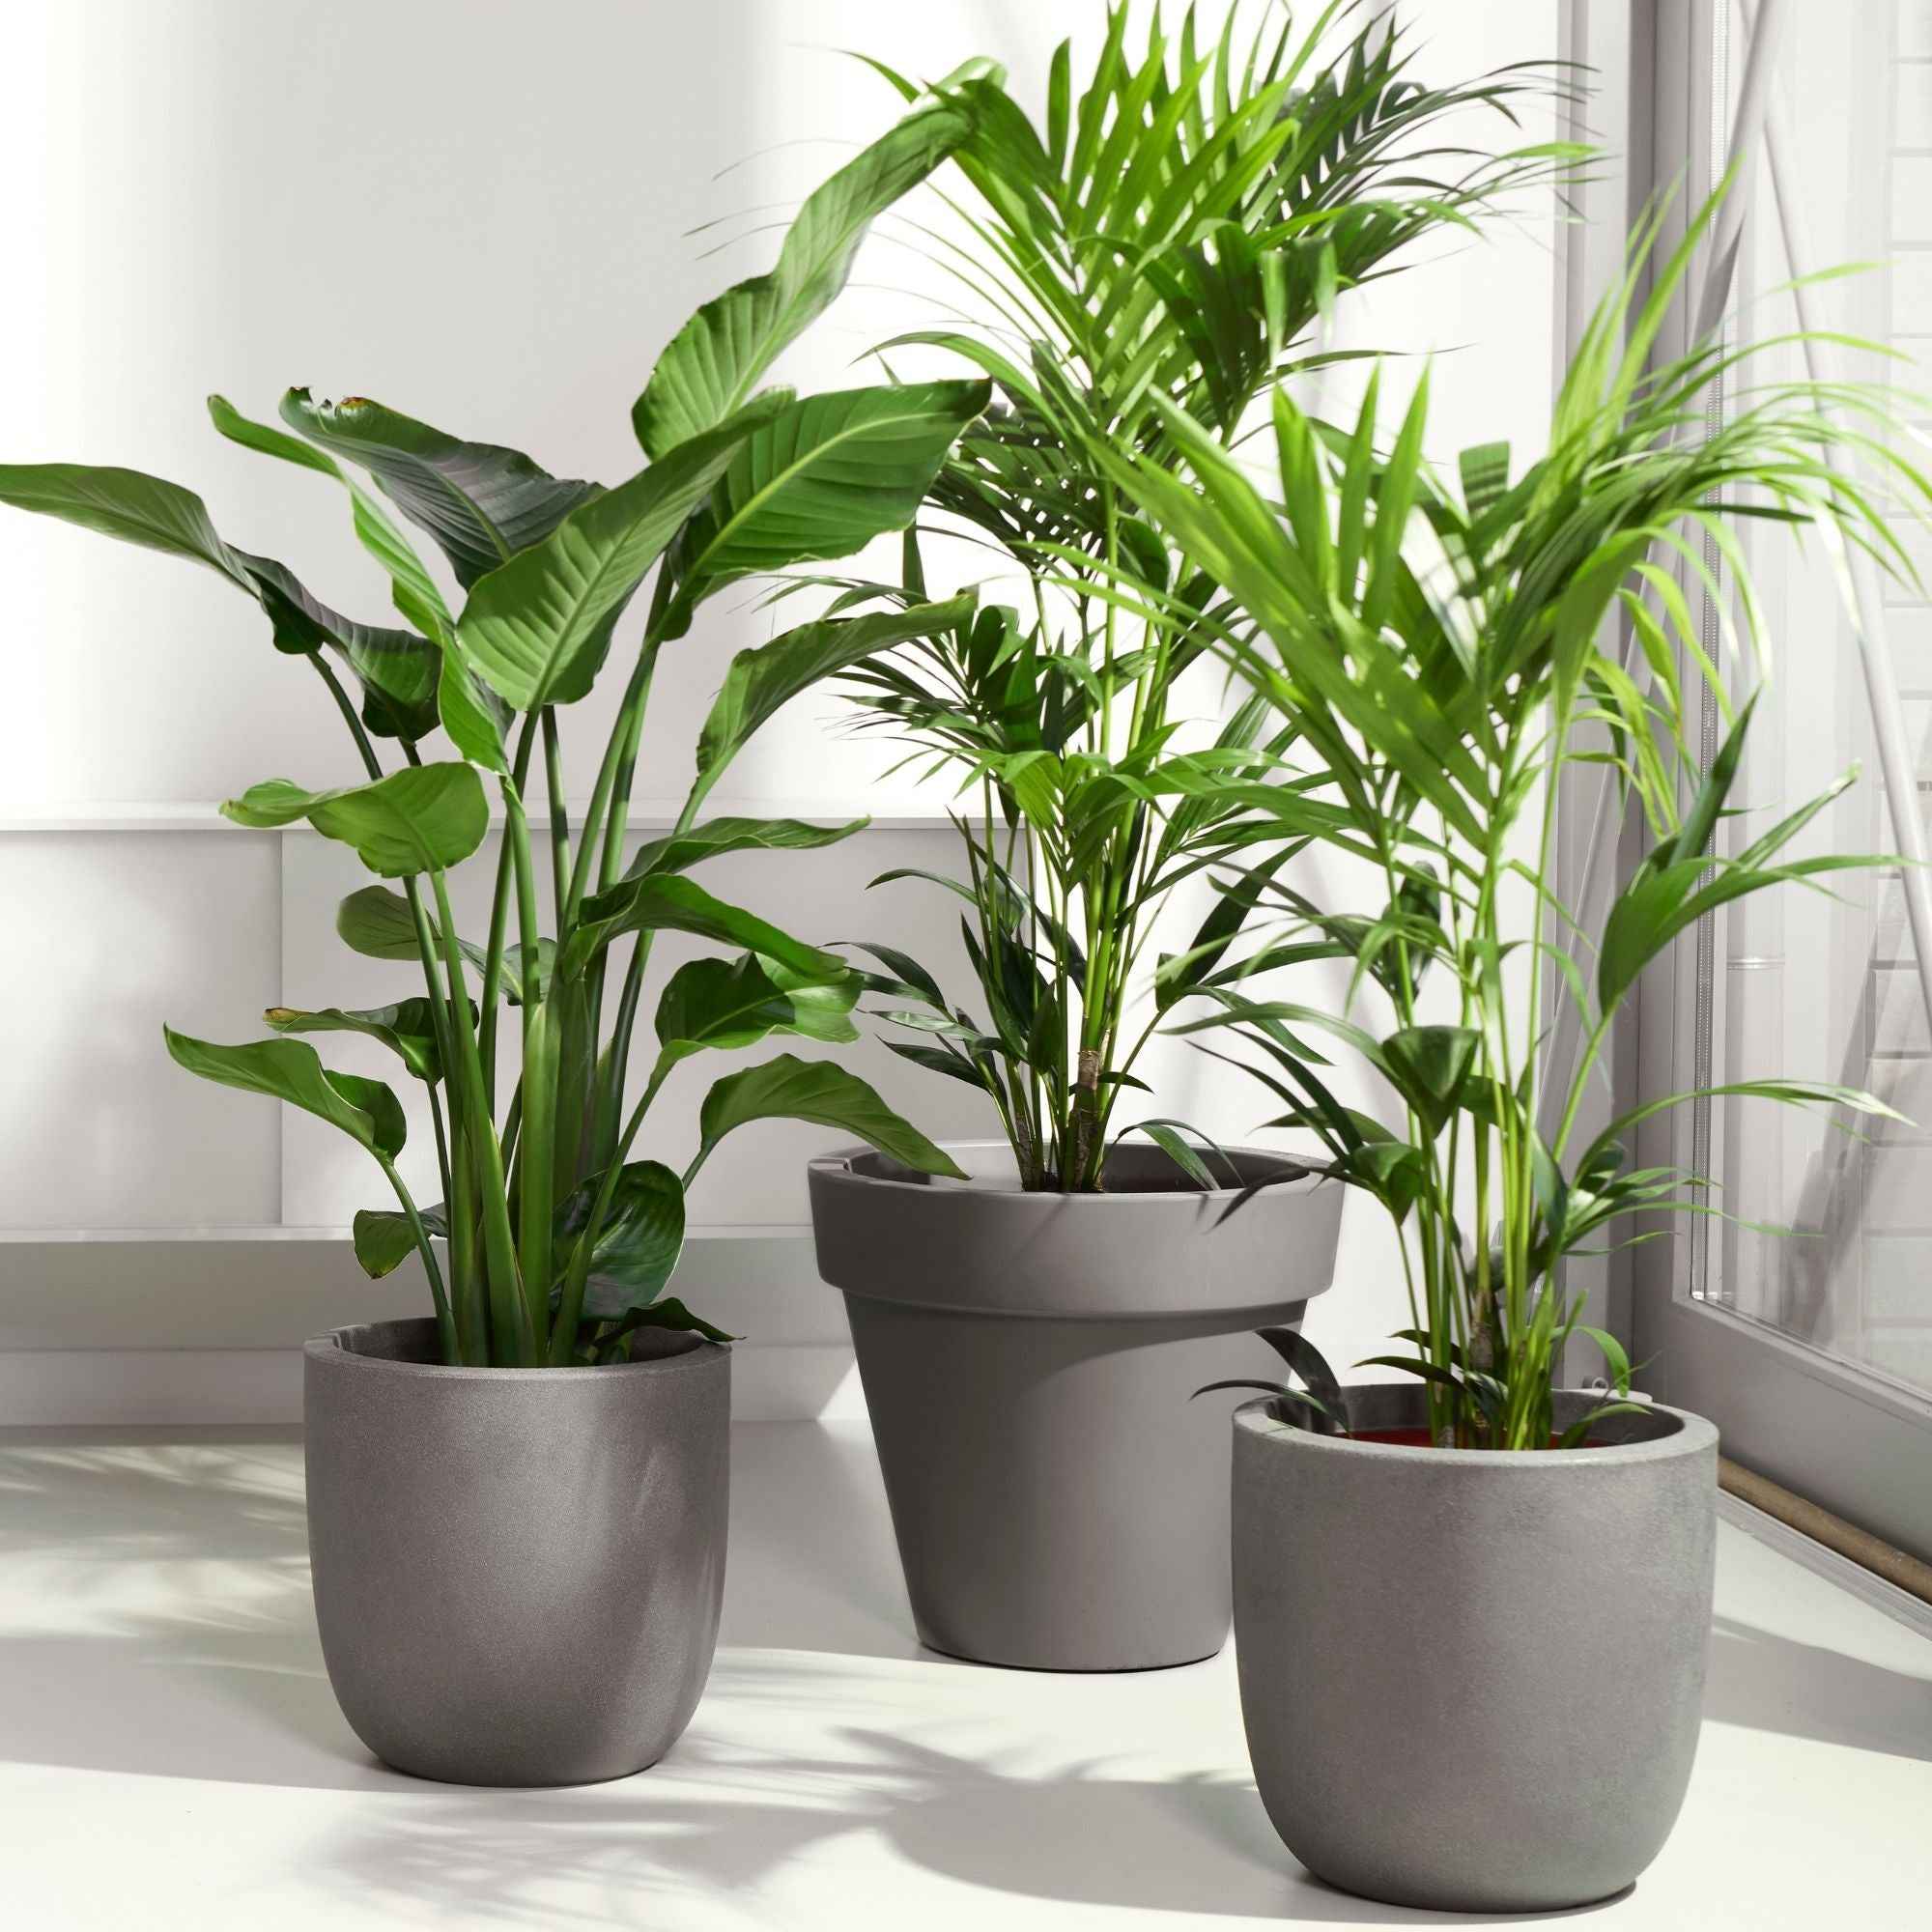 10 plantes d'intérieur faciles d'entretien - Les variétés les plus